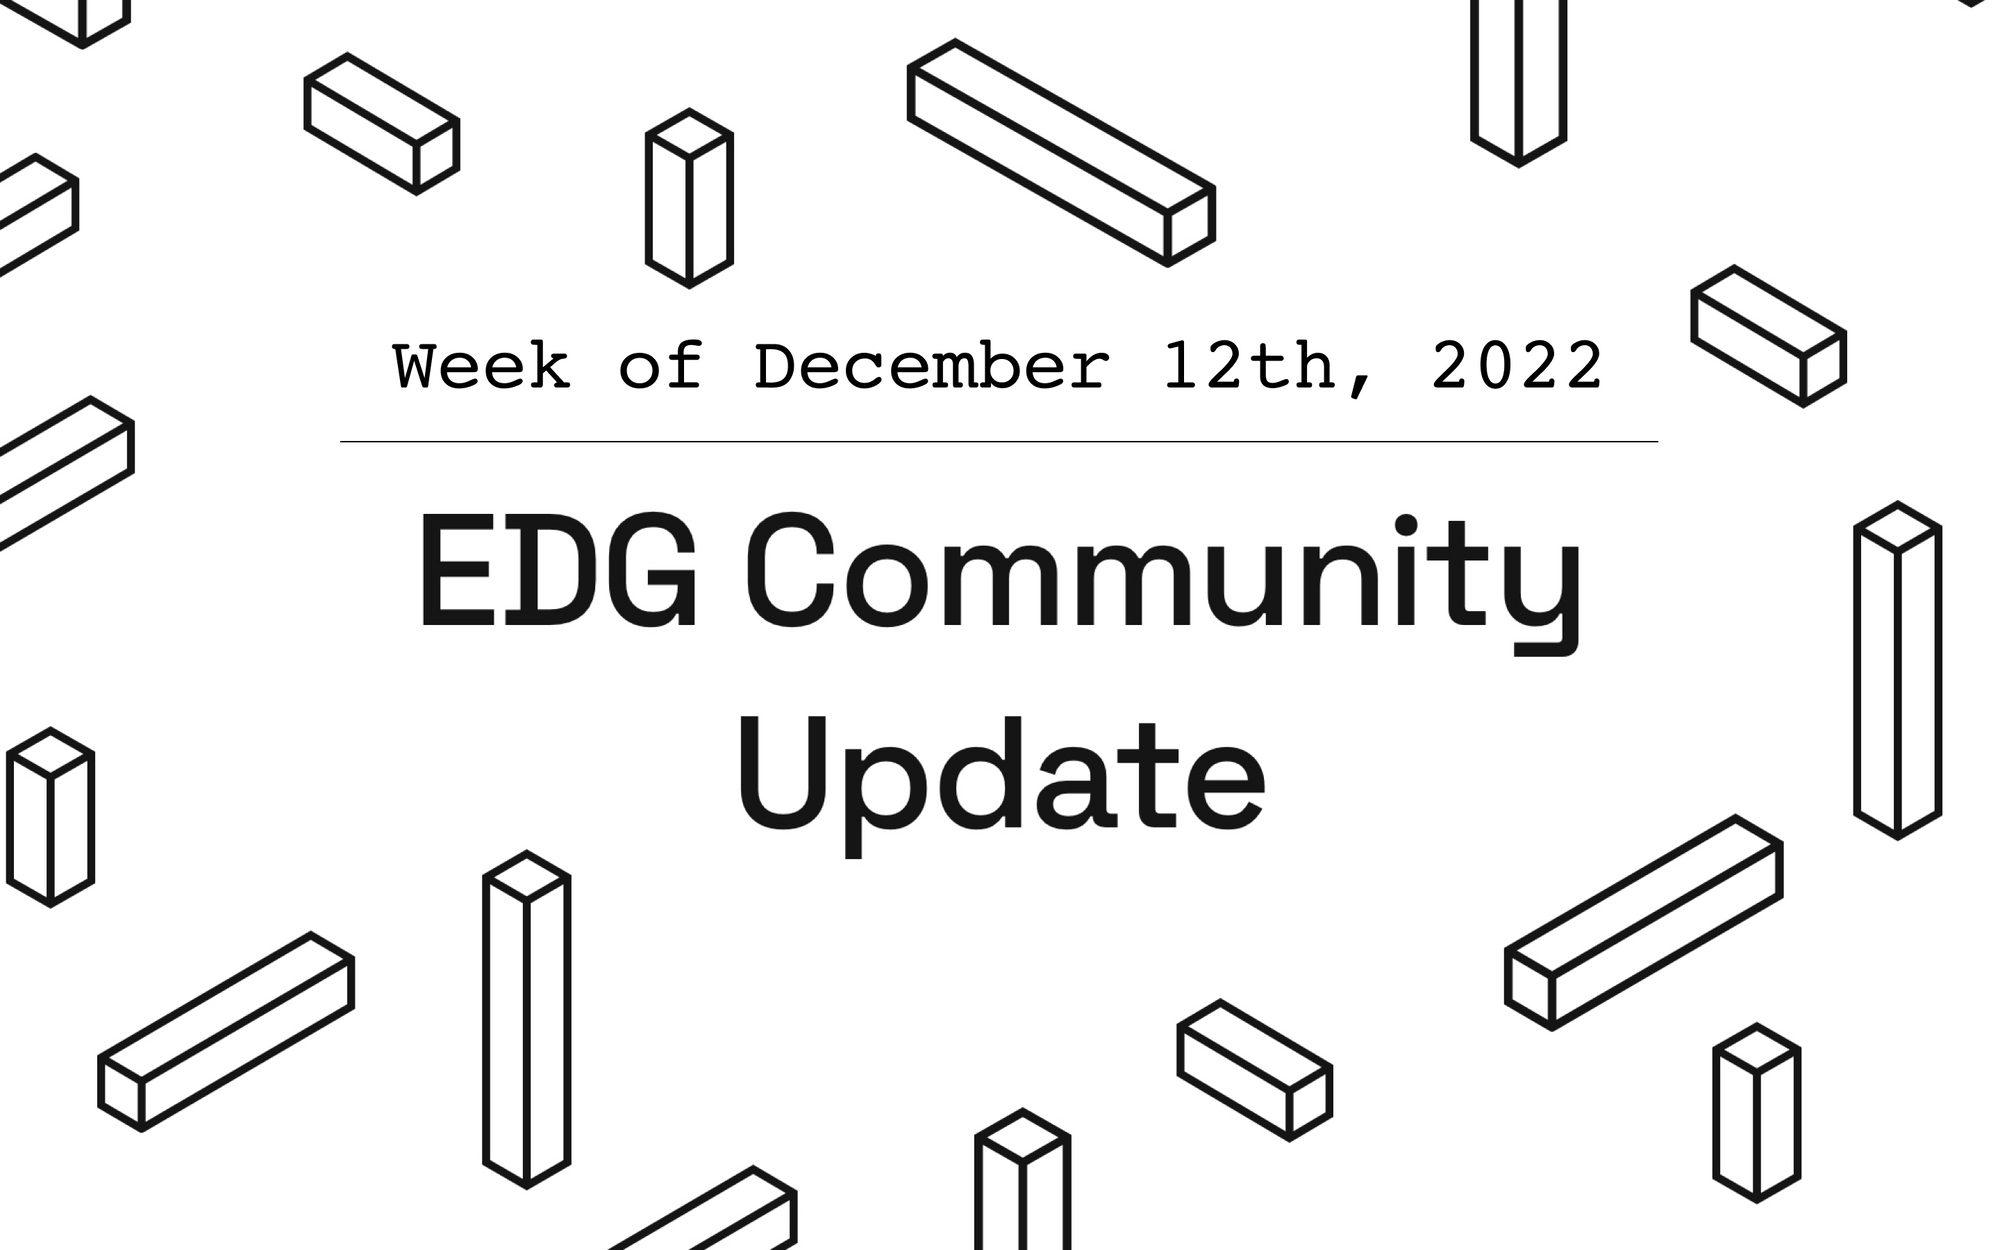 EDG Community Update: Week of December 12th, 2022